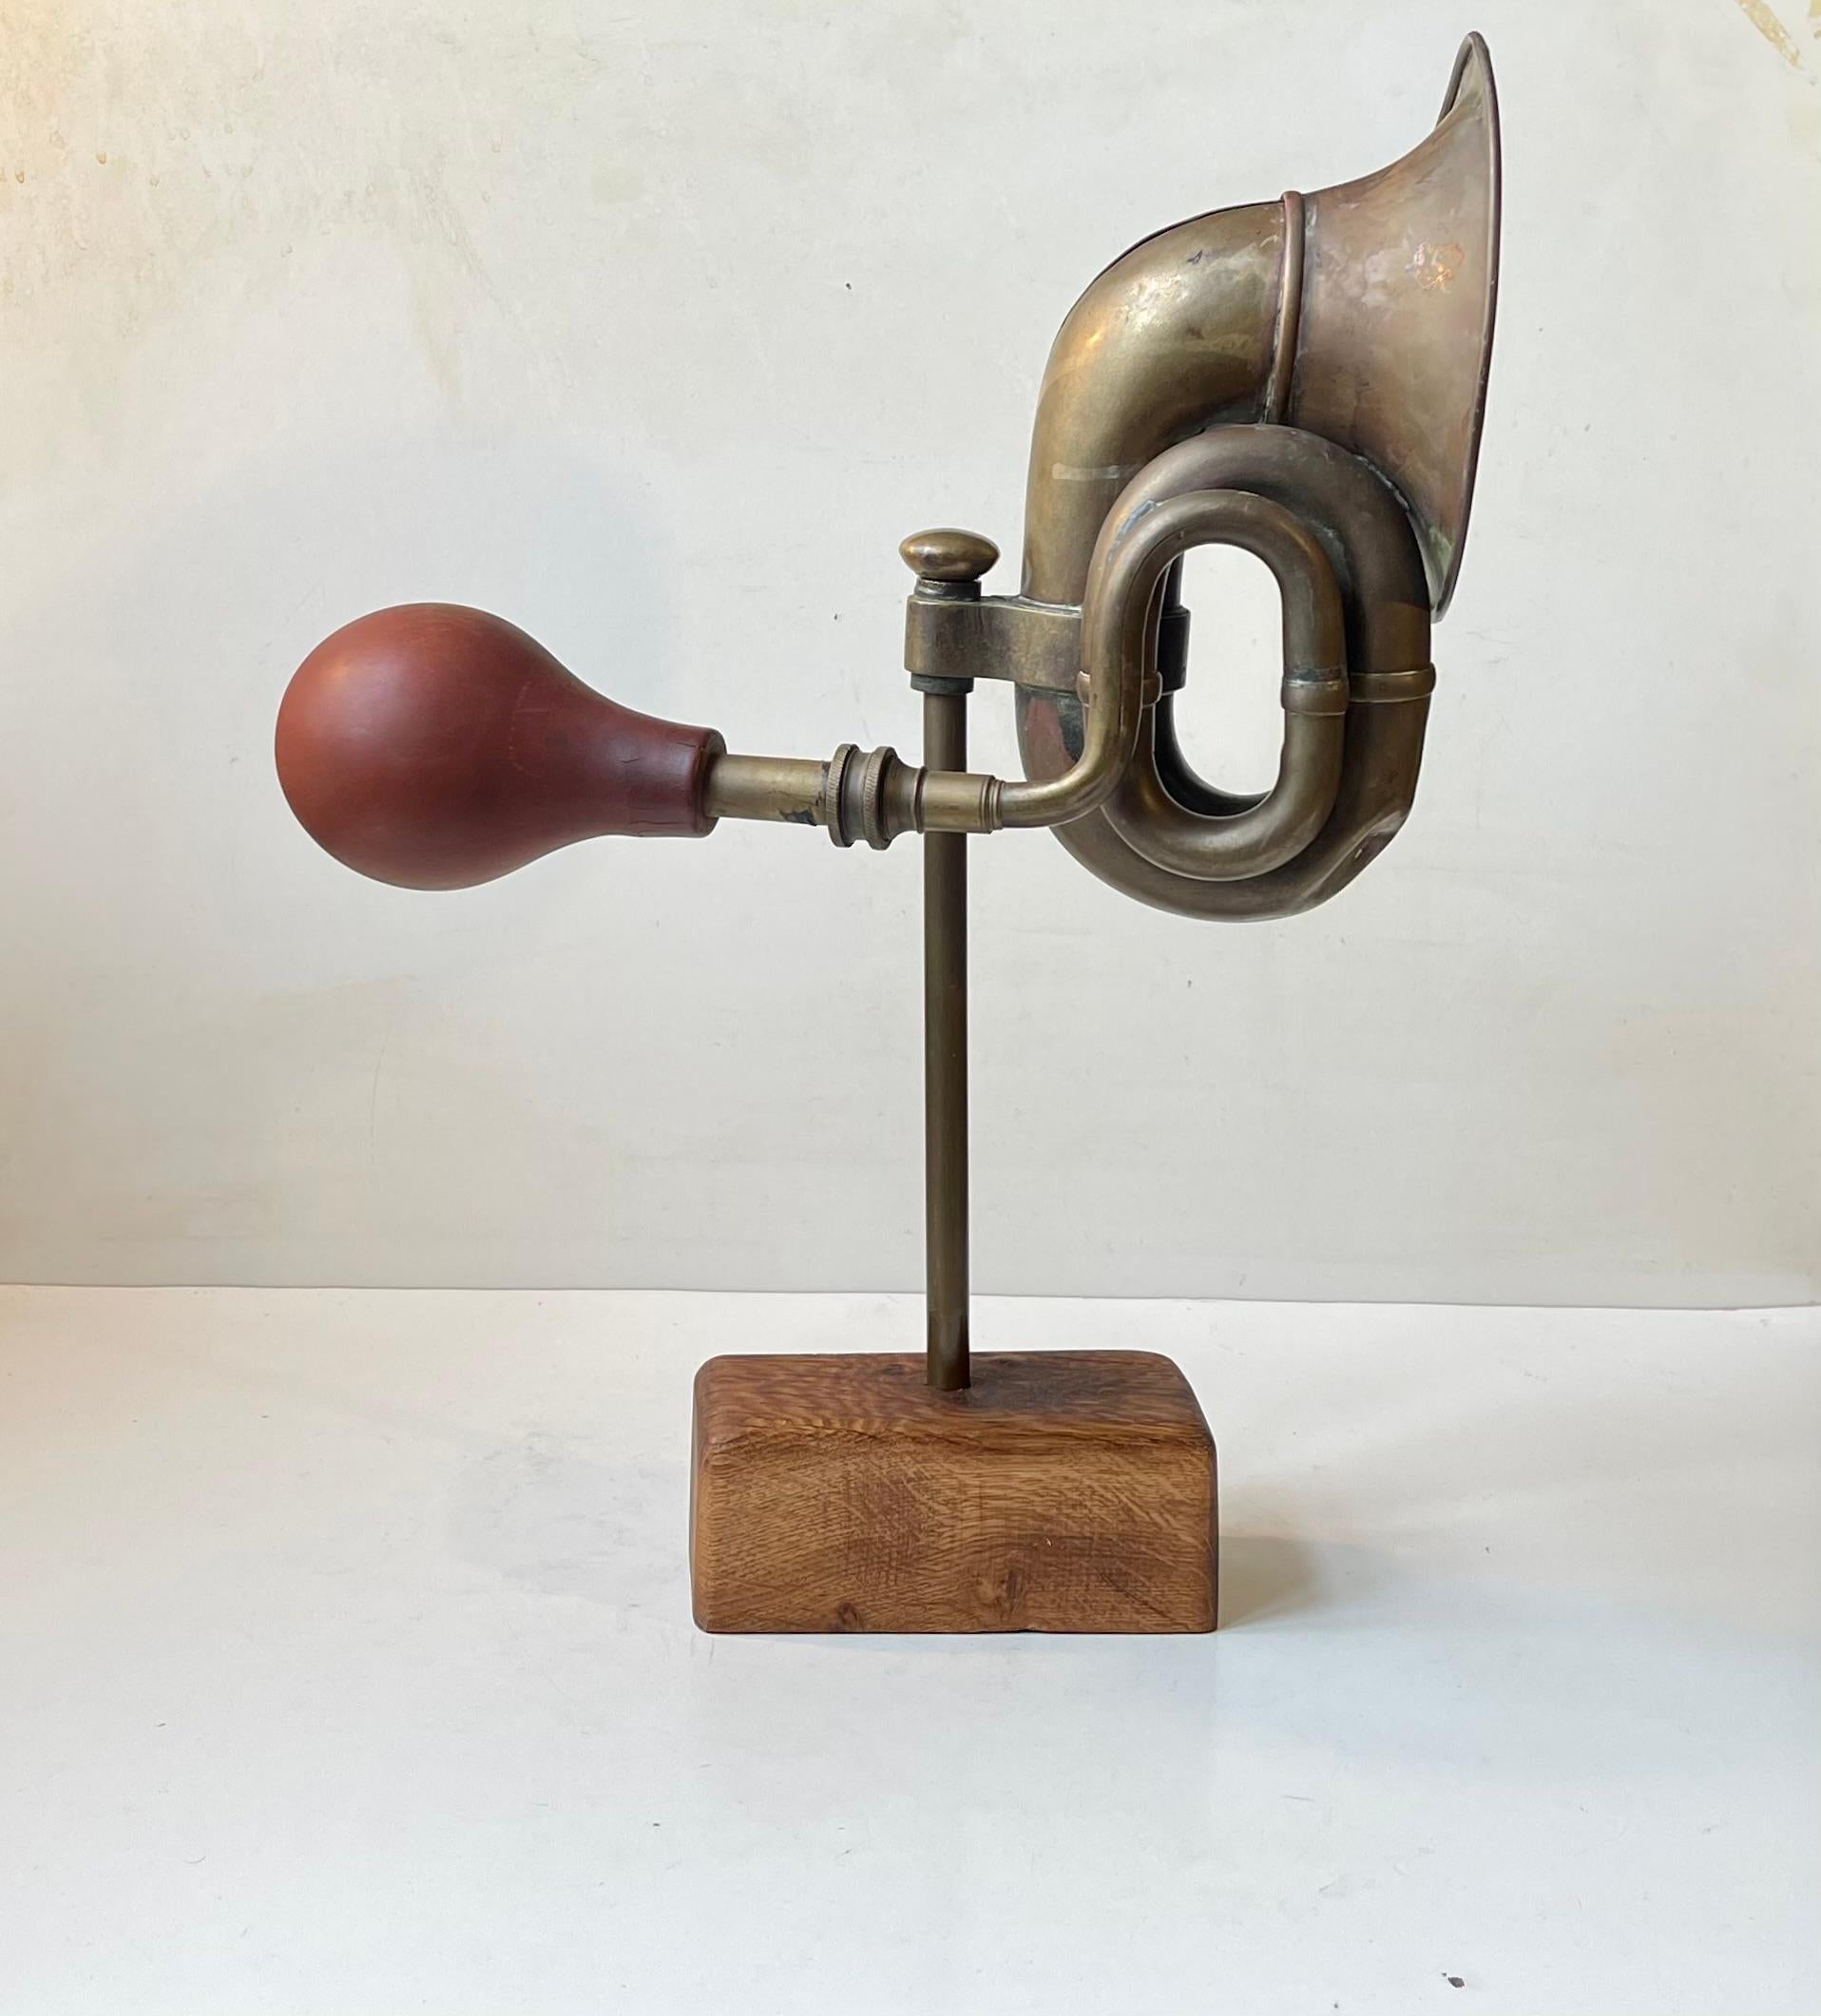 Ungewöhnliches montiertes Objekt in Form eines Messing-Fahrzeughorns aus den 1920er Jahren auf einer Messingstange und einem rechteckigen, patinierten Eichensockel. Unbekannter dänischer Bildhauer/Künstler, ca. 1970-80. Das Horn ist immer noch etwas